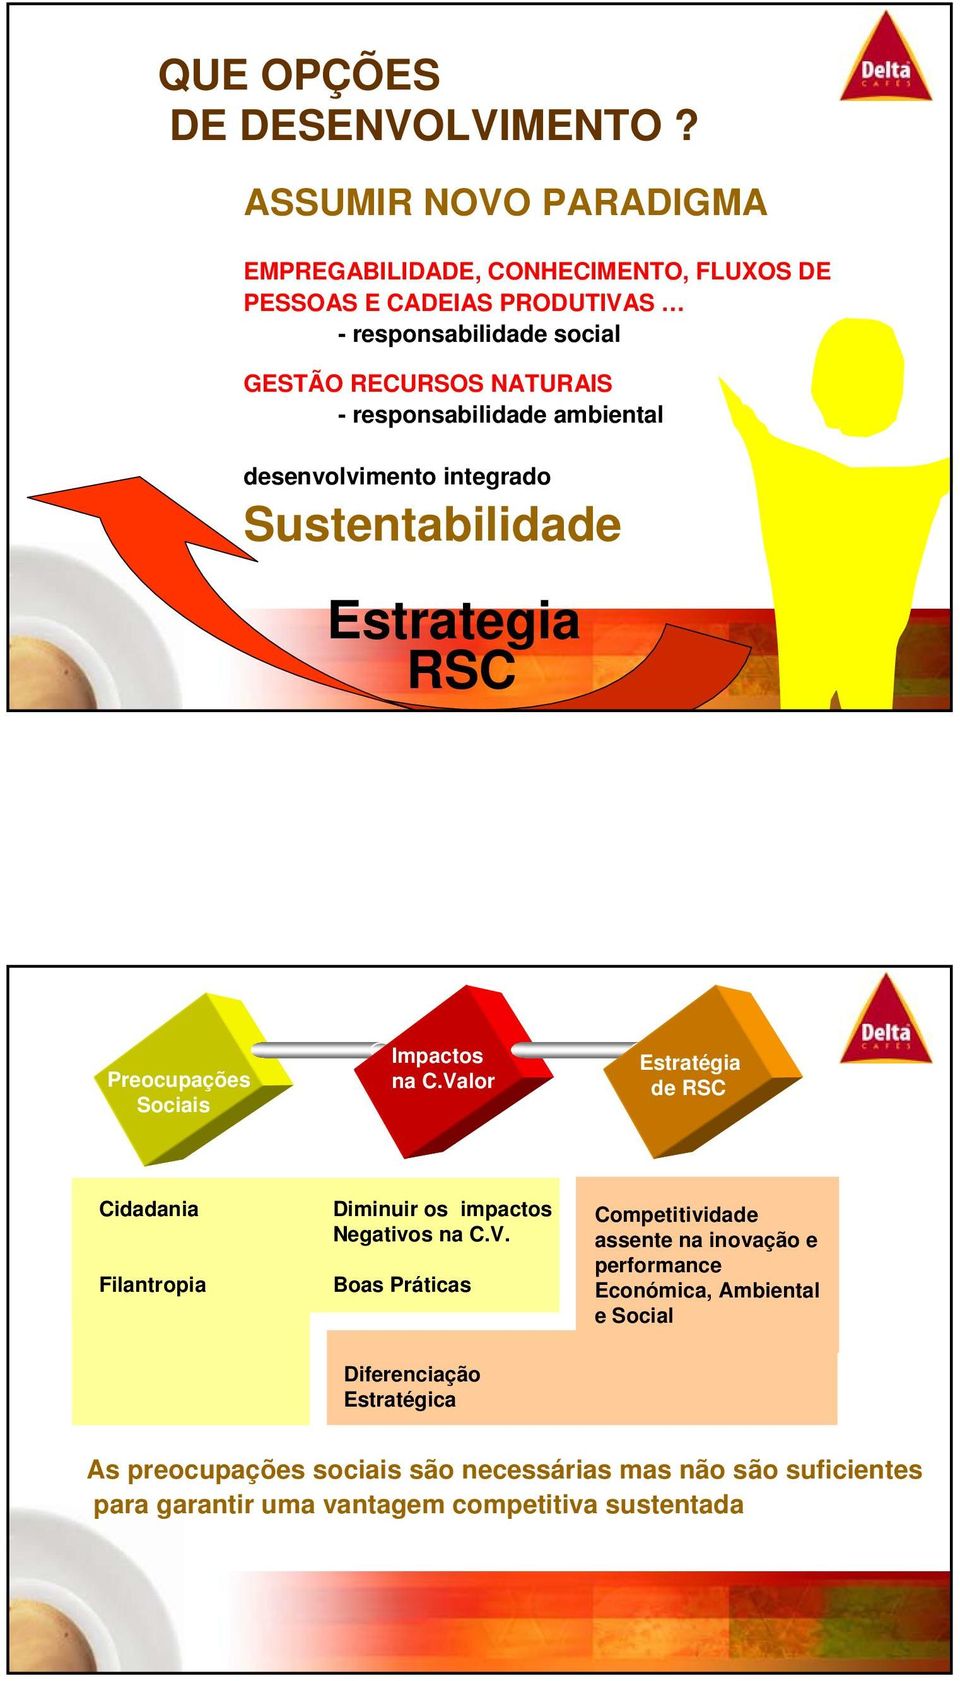 responsabilidade ambiental desenvolvimento integrado Sustentabilidade Estrategia RSC Preocupações Sociais Impactos na C.